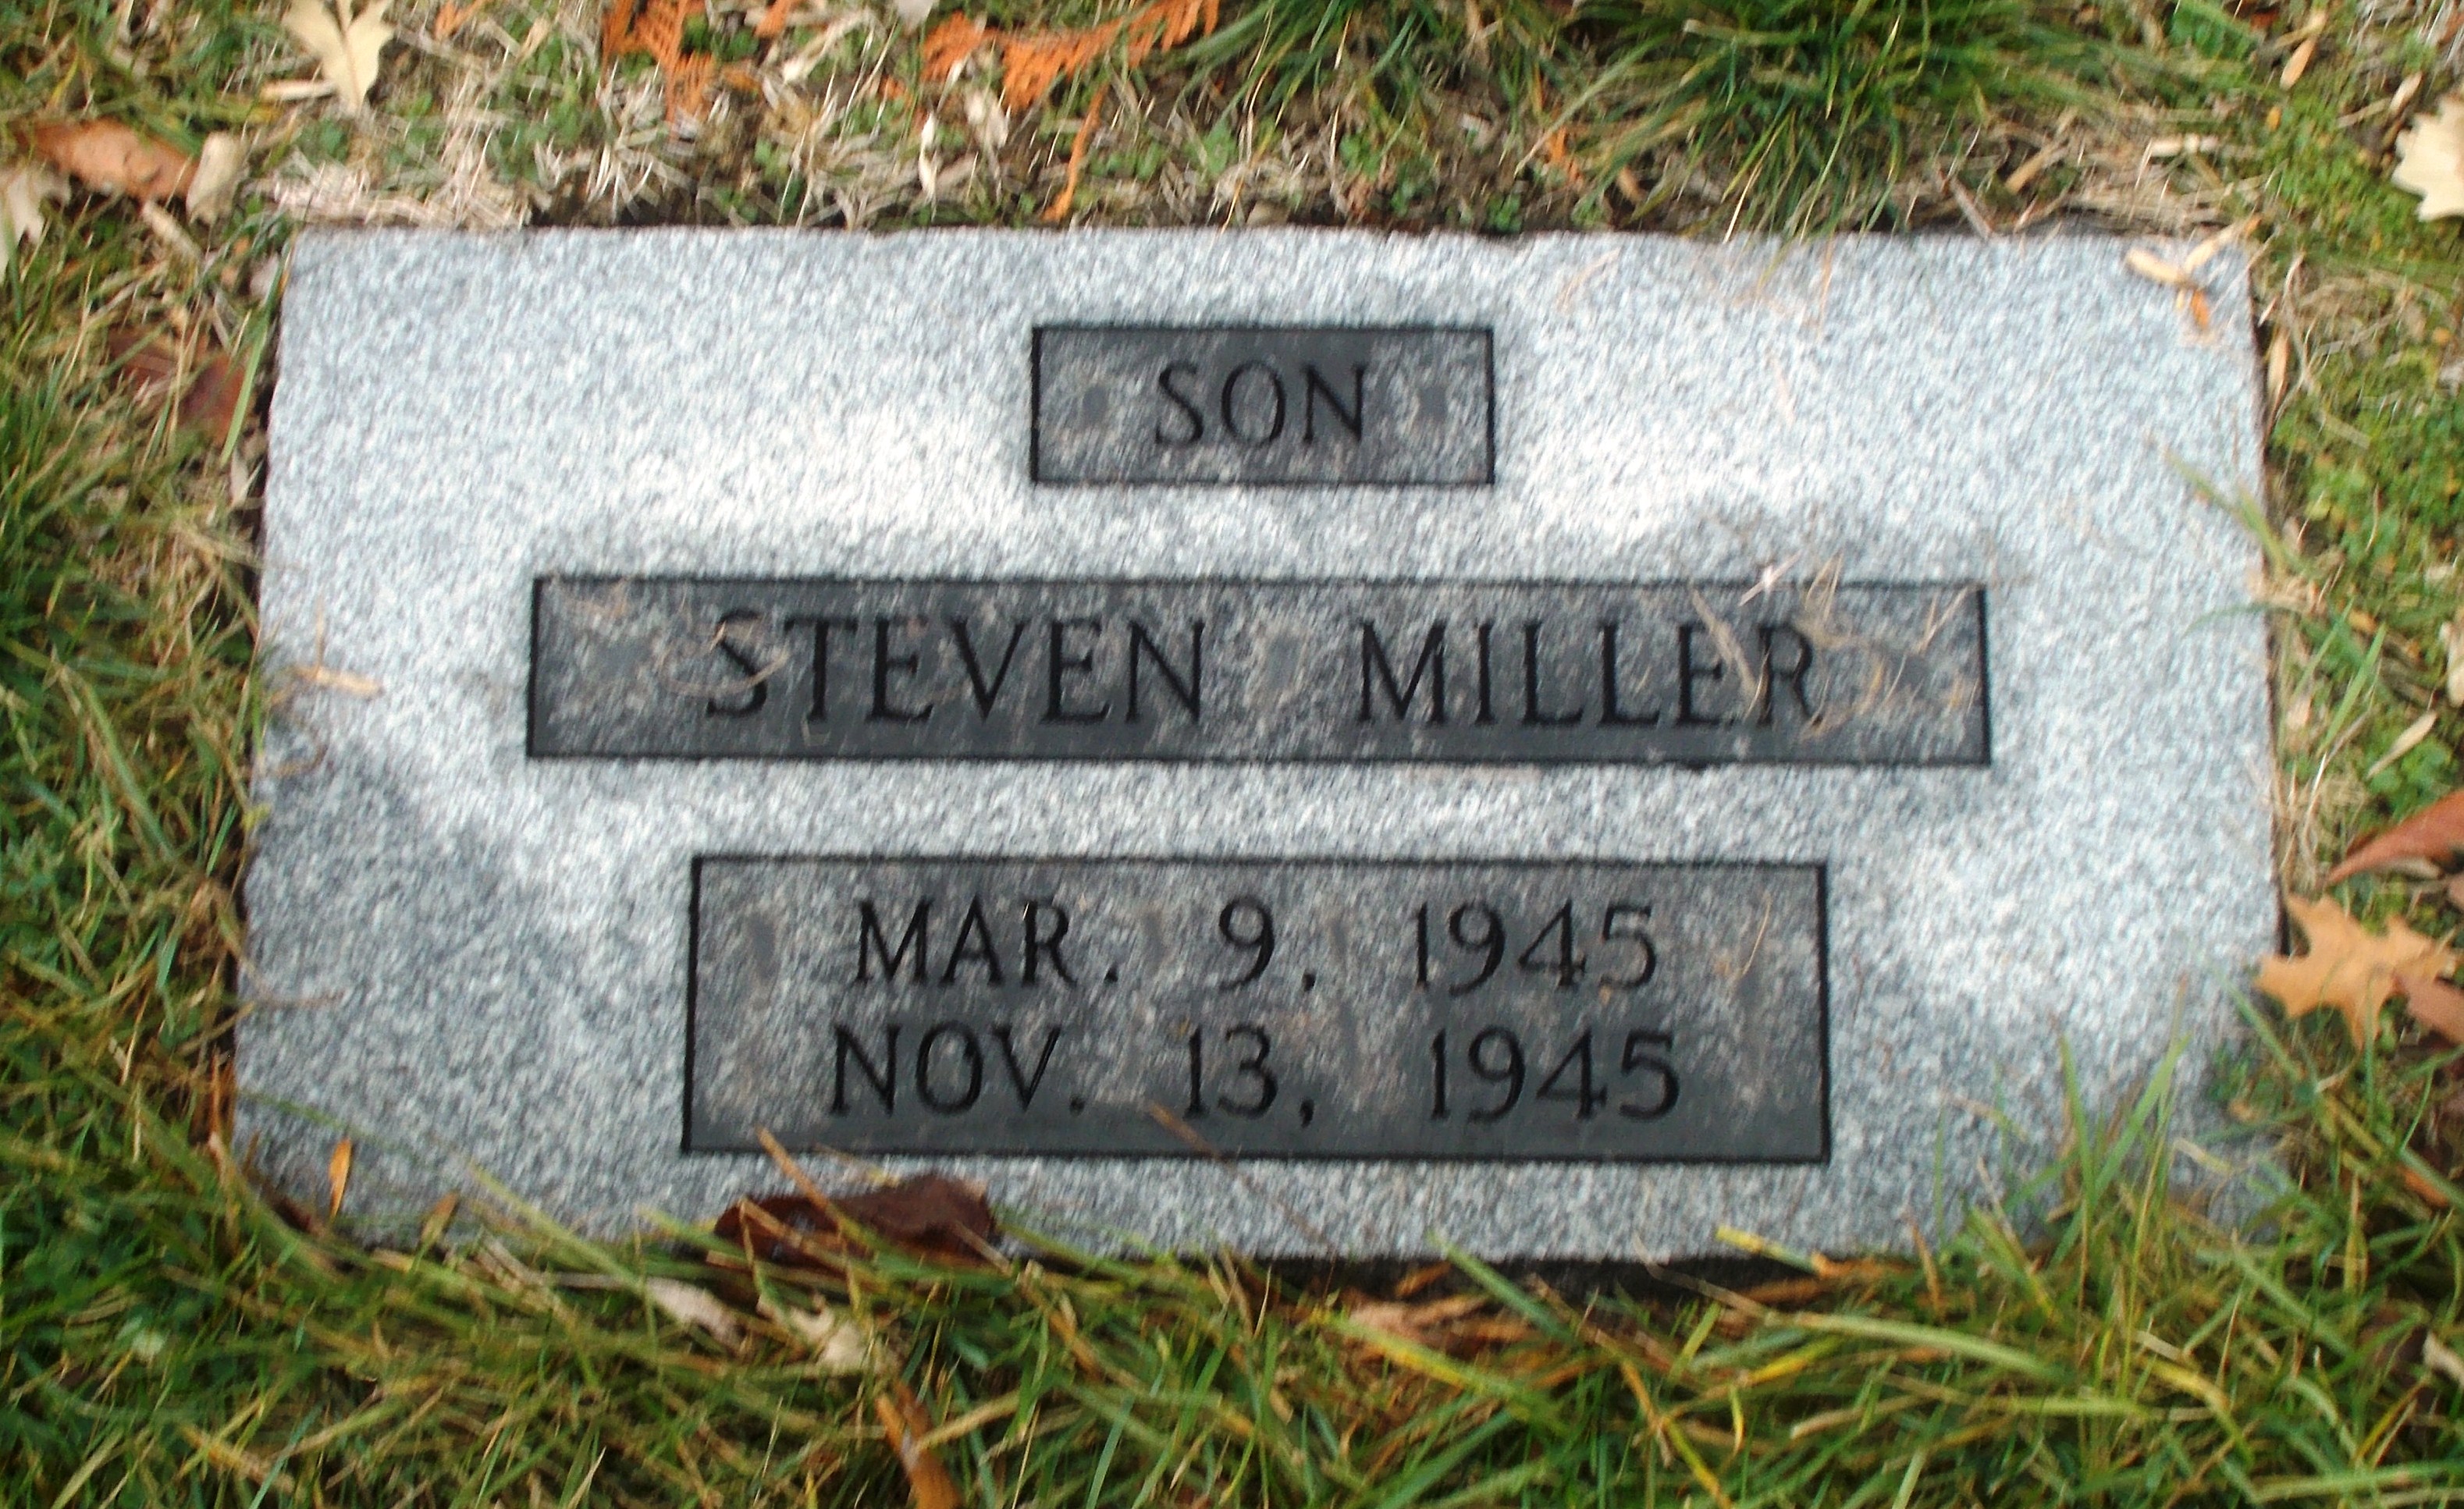 Steven Miller